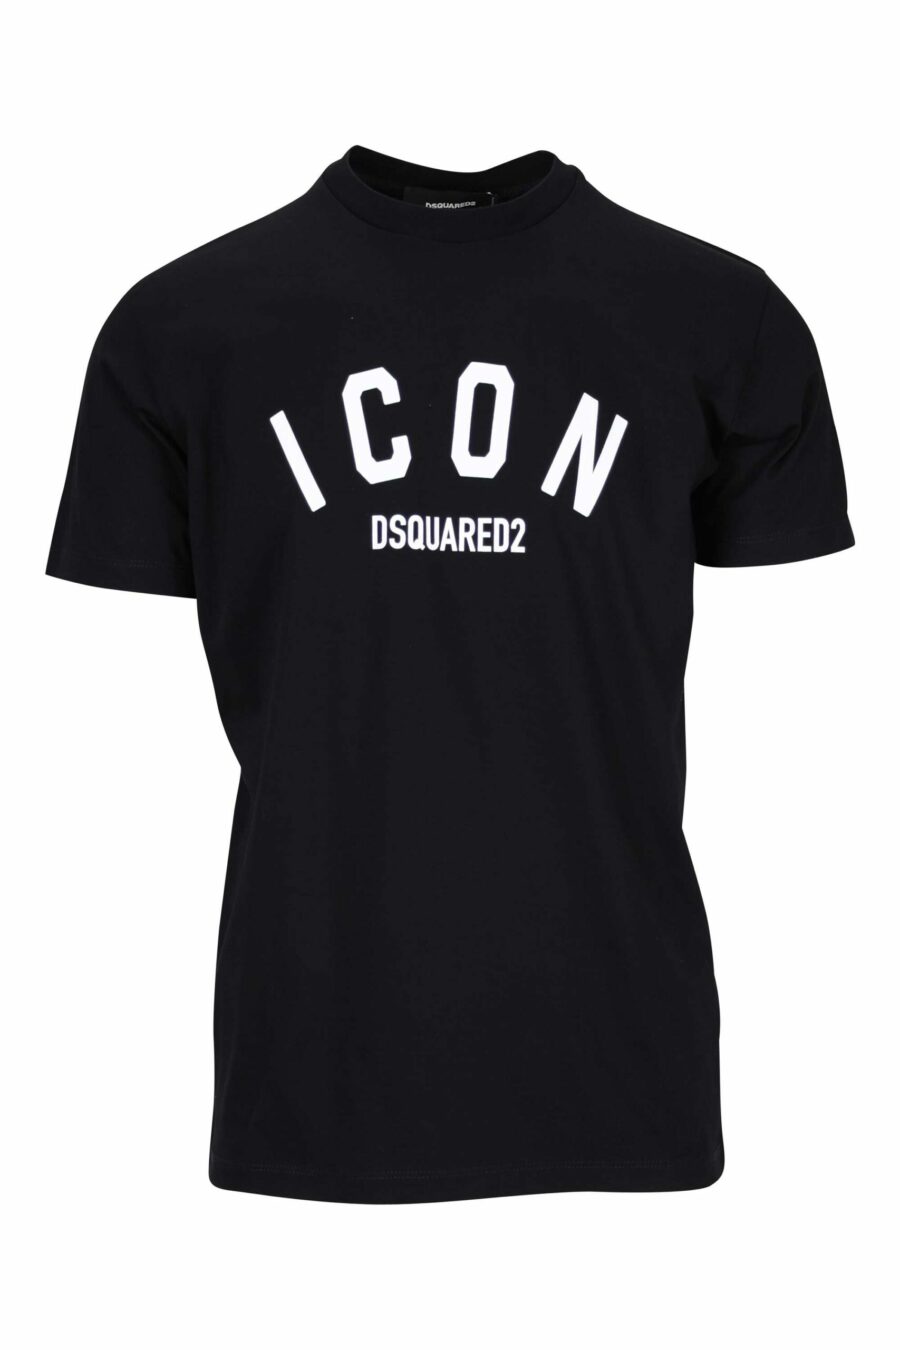 T-shirt noir avec logo "icon" plié - 8054148400989 scaled